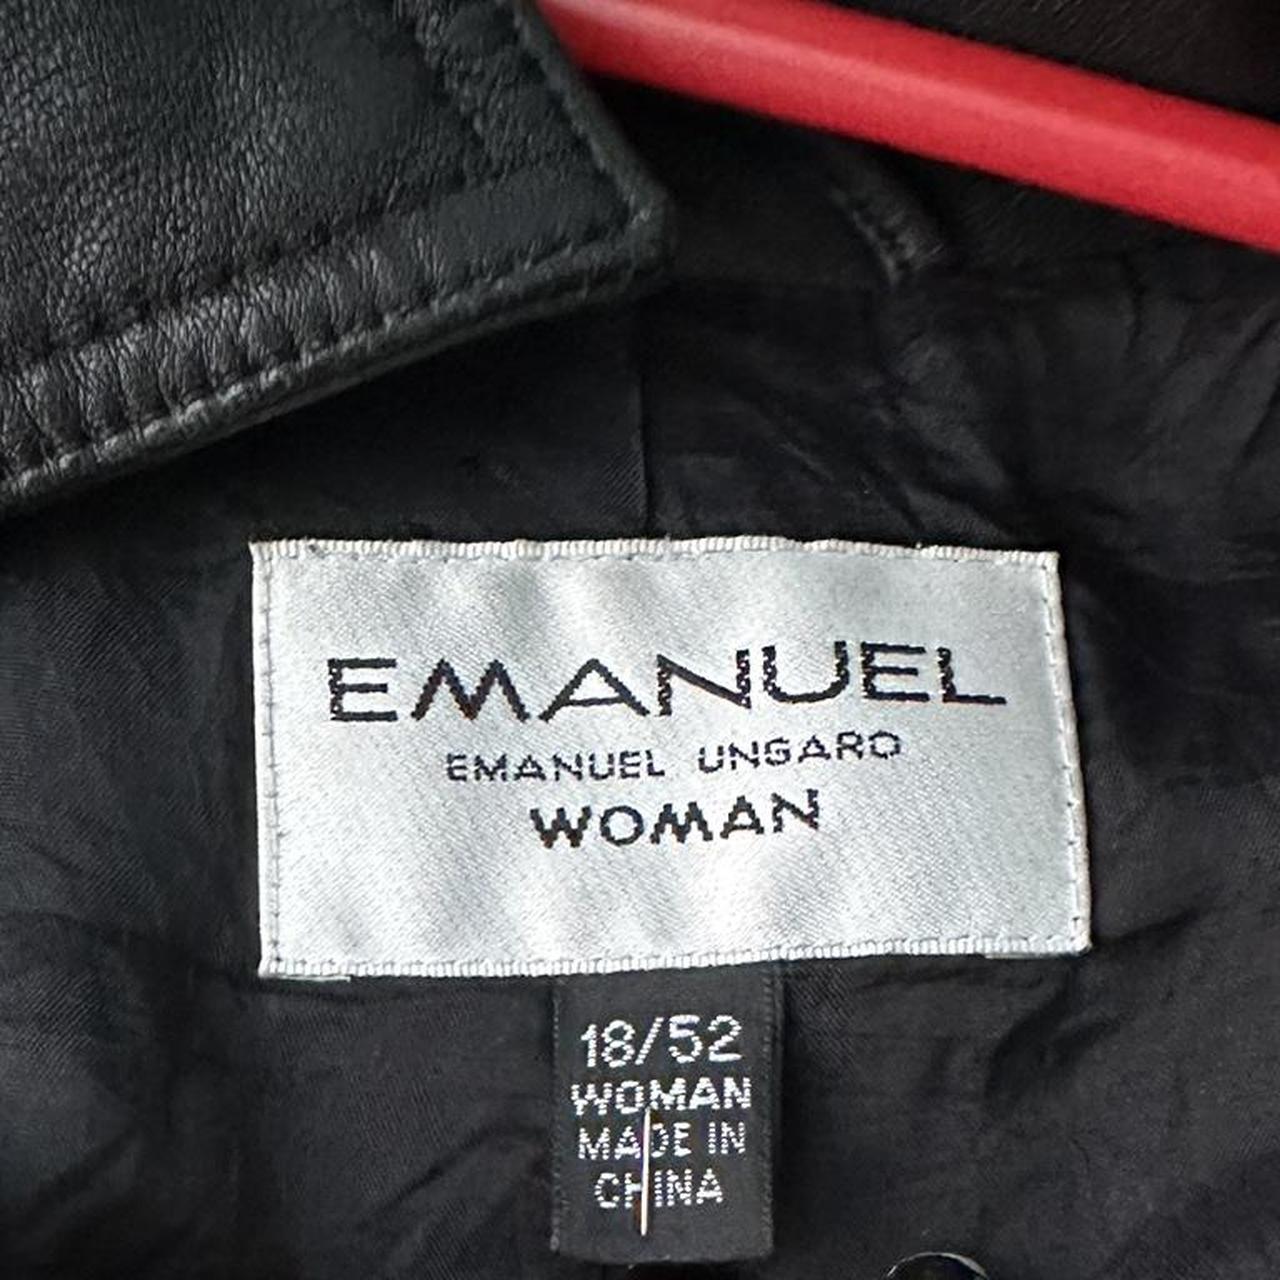 Emanuel Ungaro Women's Jacket (2)